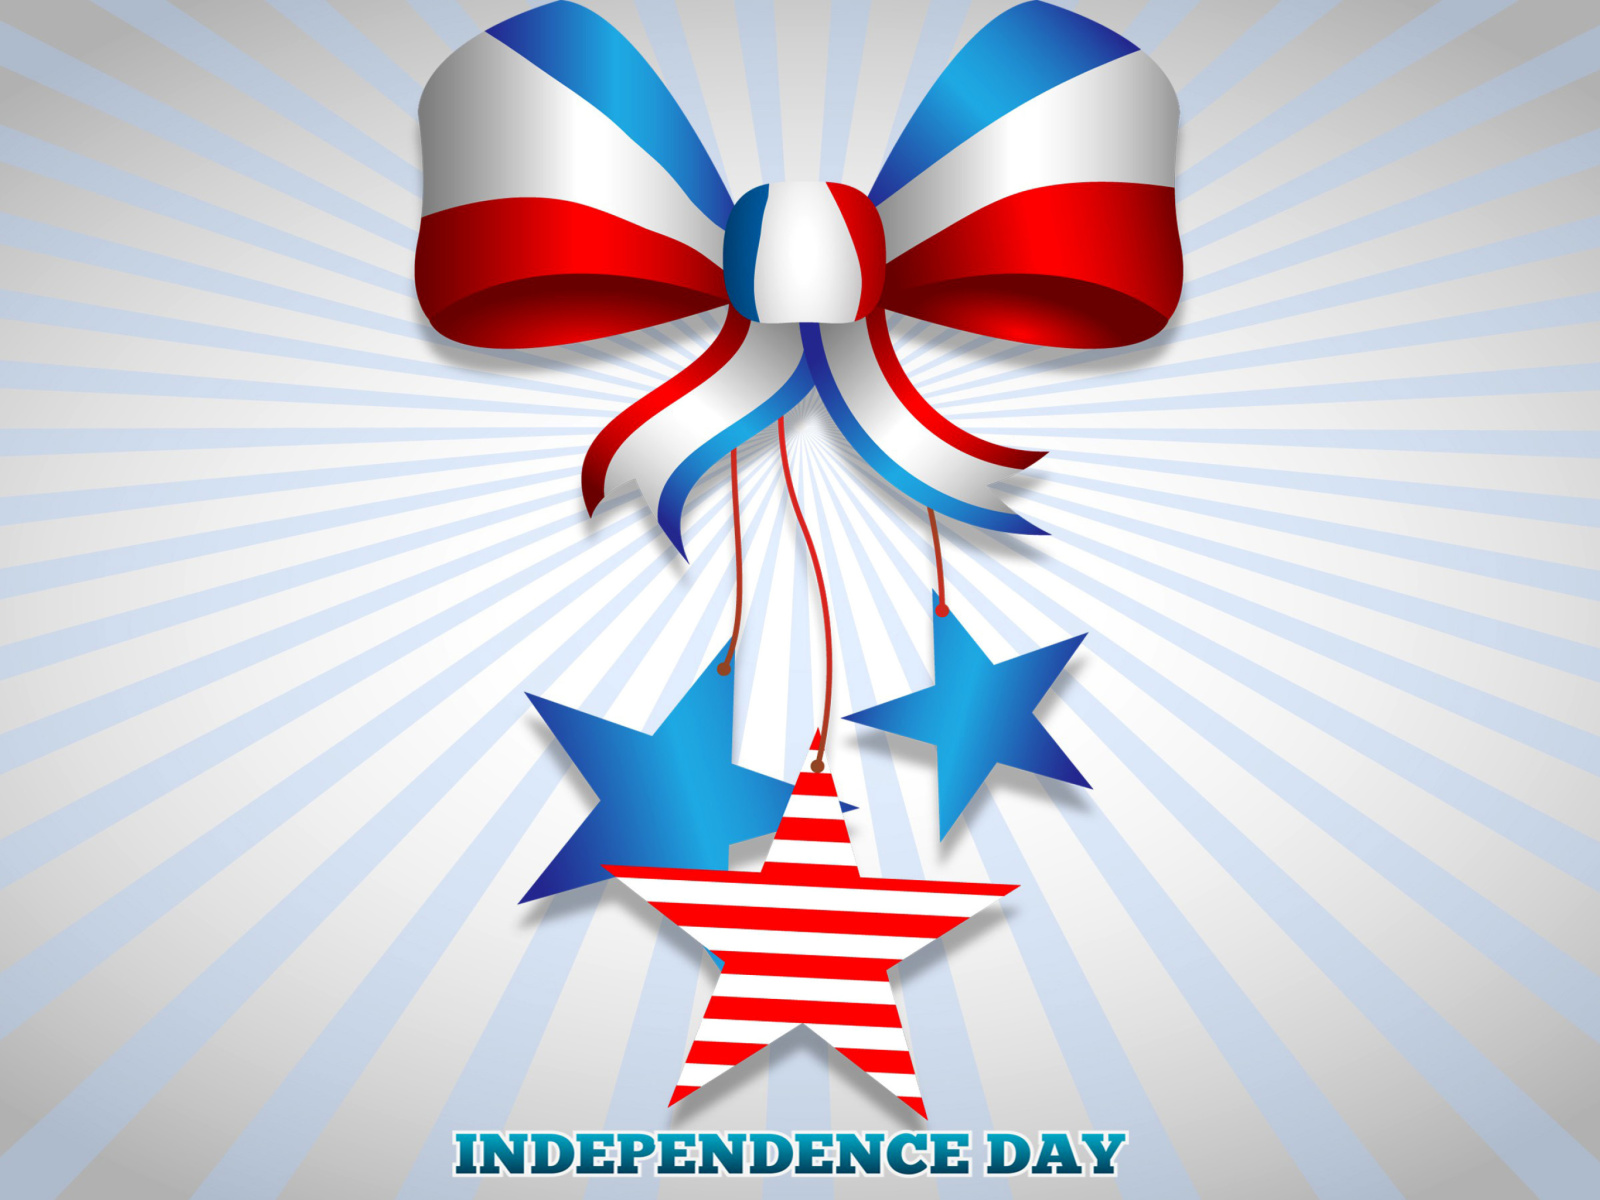 Sfondi United states america Idependence day 4th july 1600x1200